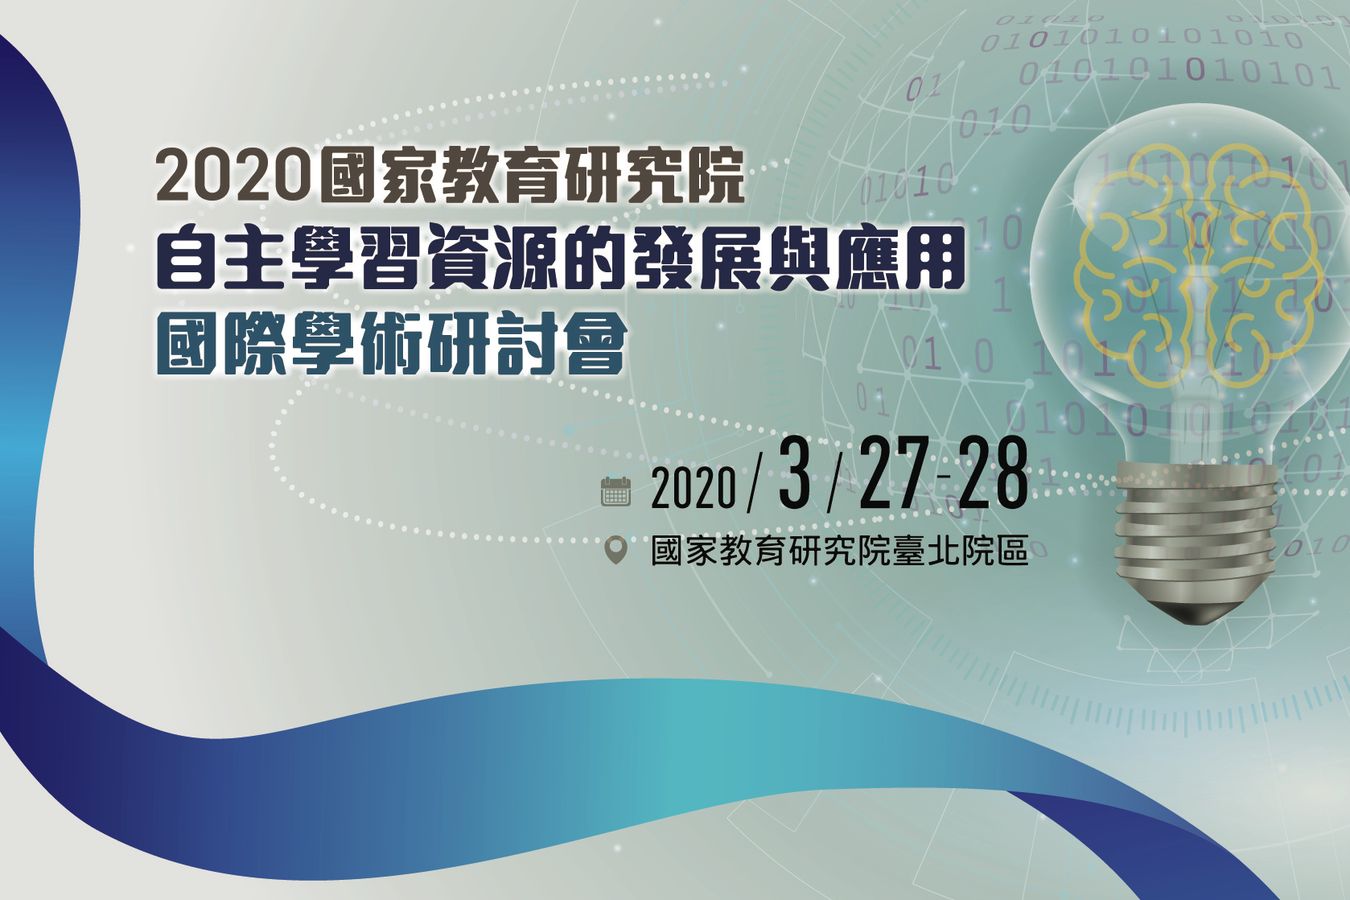 2020年「自主學習資源的發展與應用」國際學術研討會